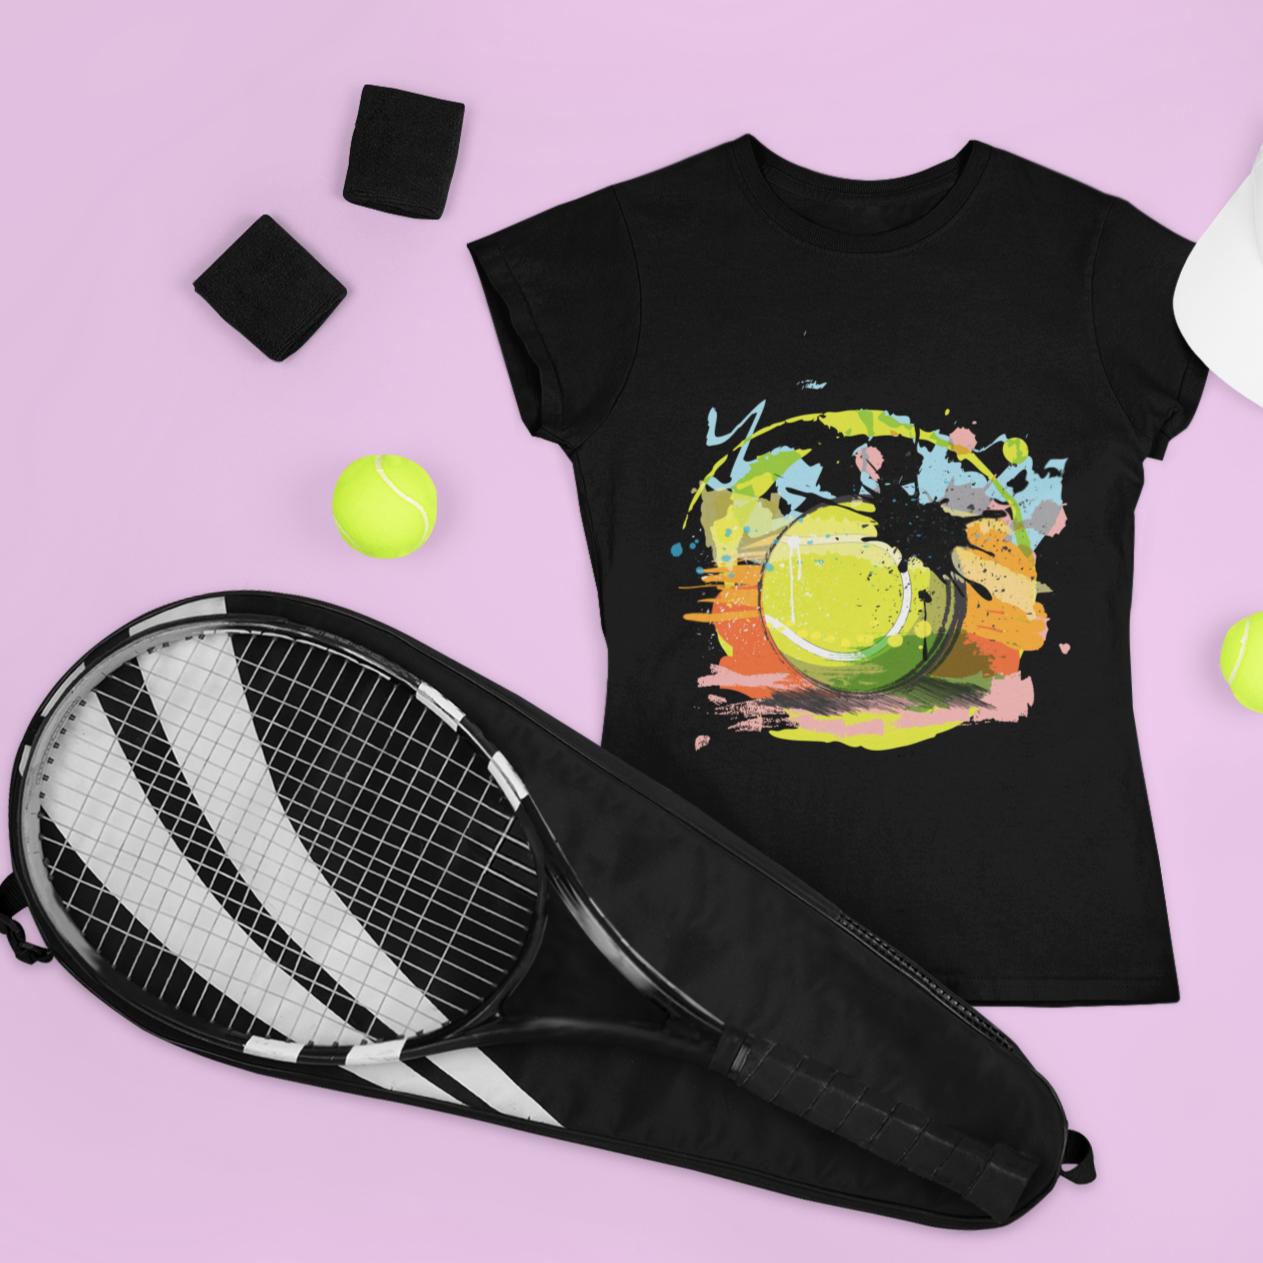 Tennis Ball Women's T-shirt - Sport Finesse